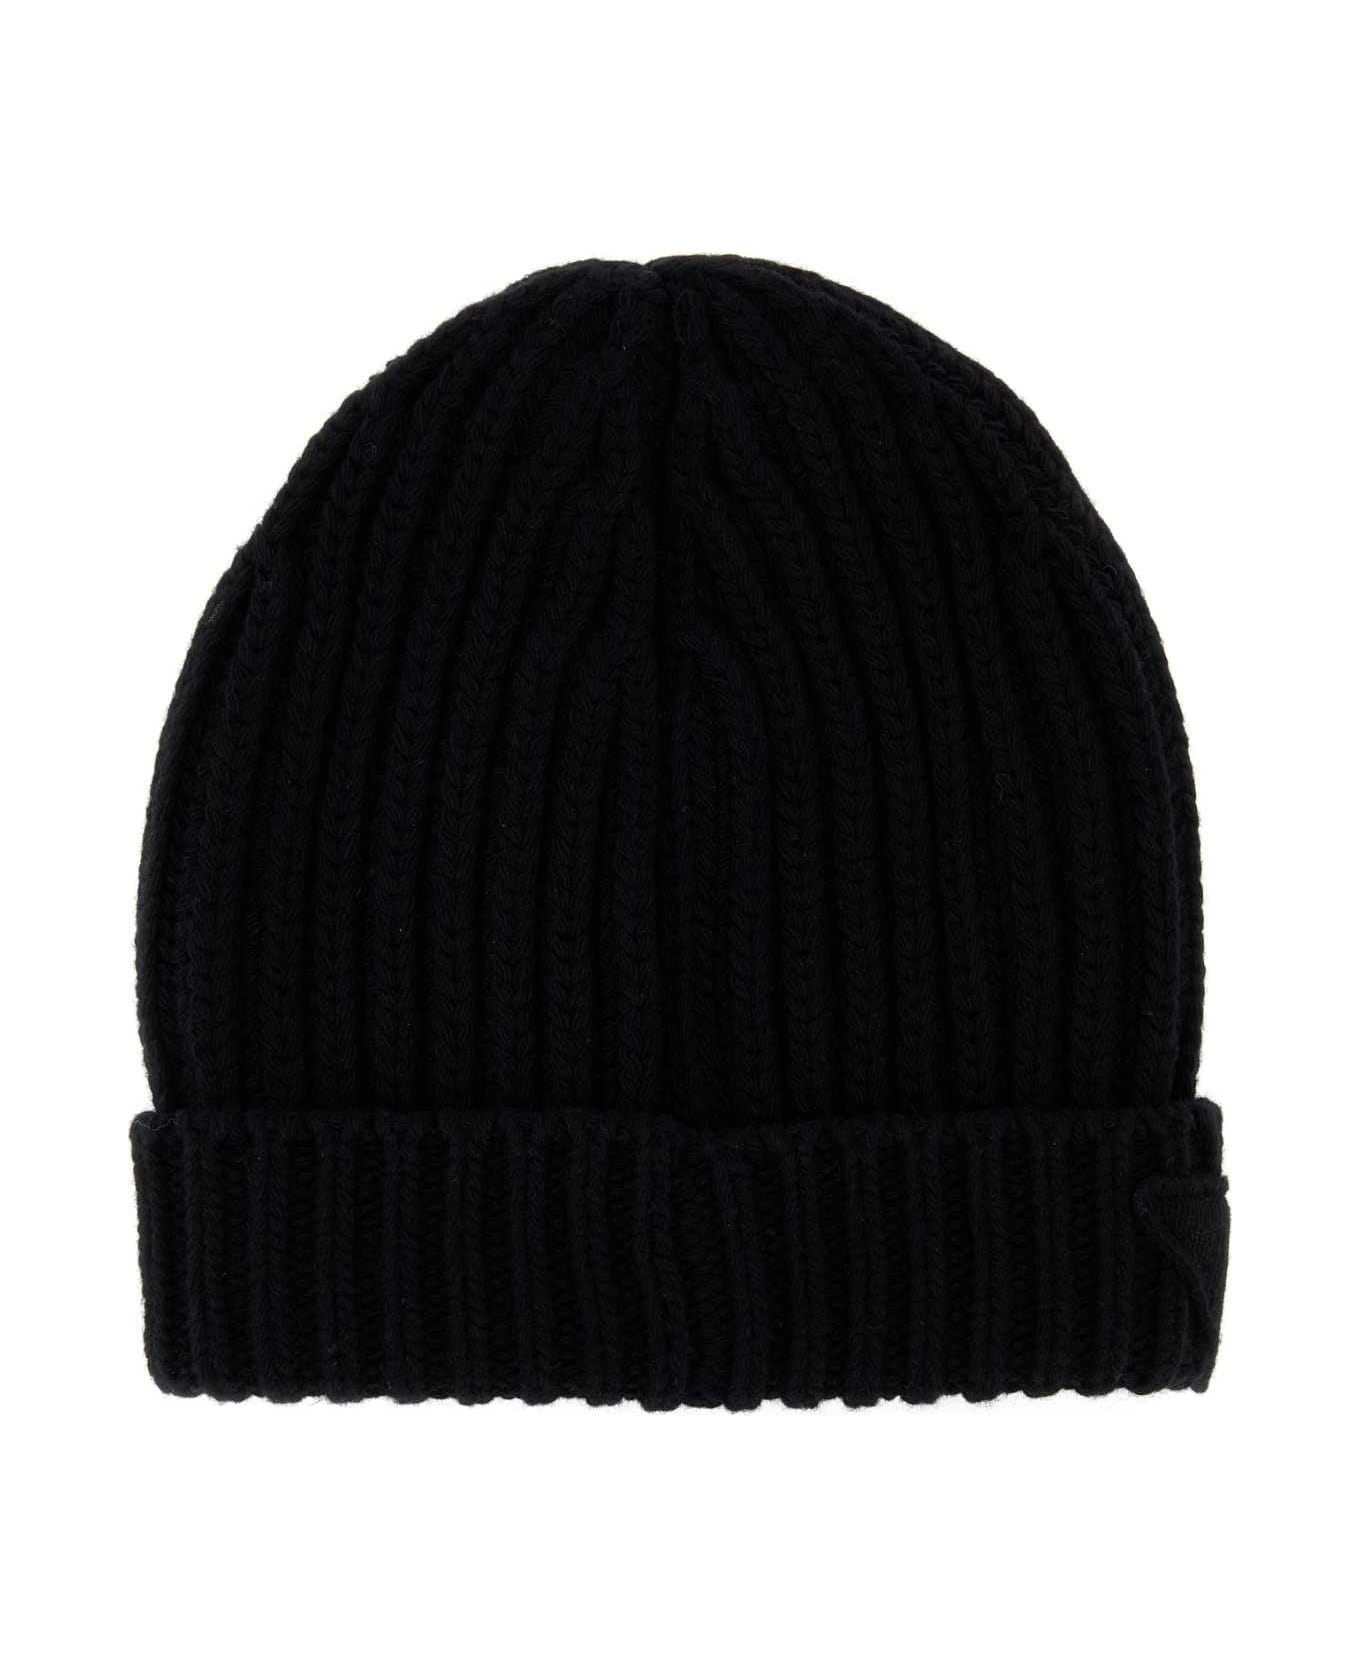 Prada Black Wool Blend Beanie Hat - F0002